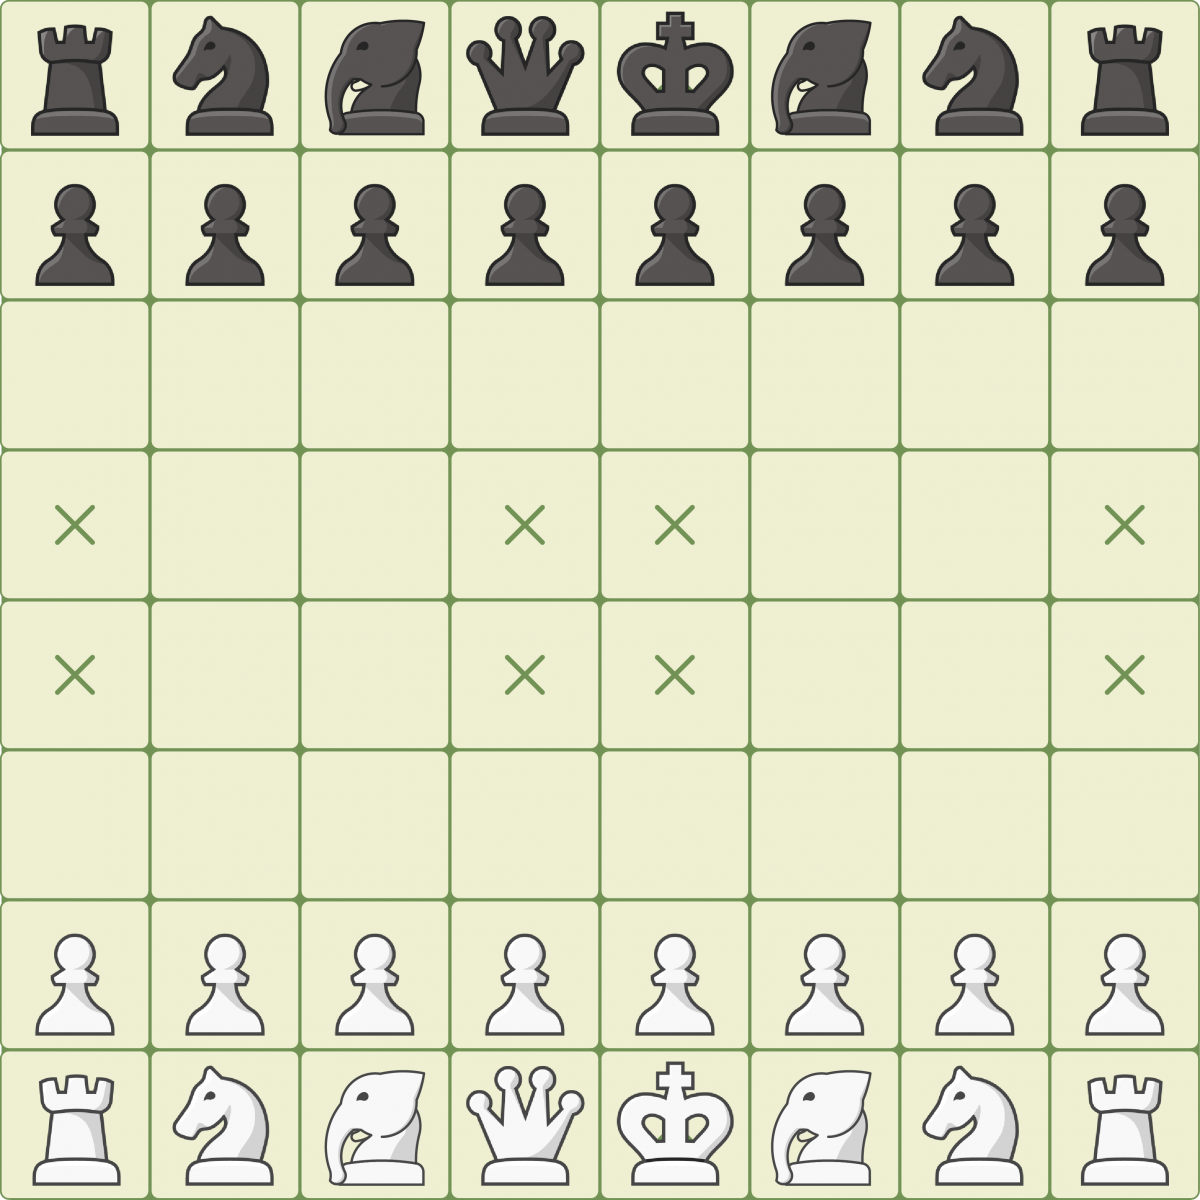 Теория шахмат